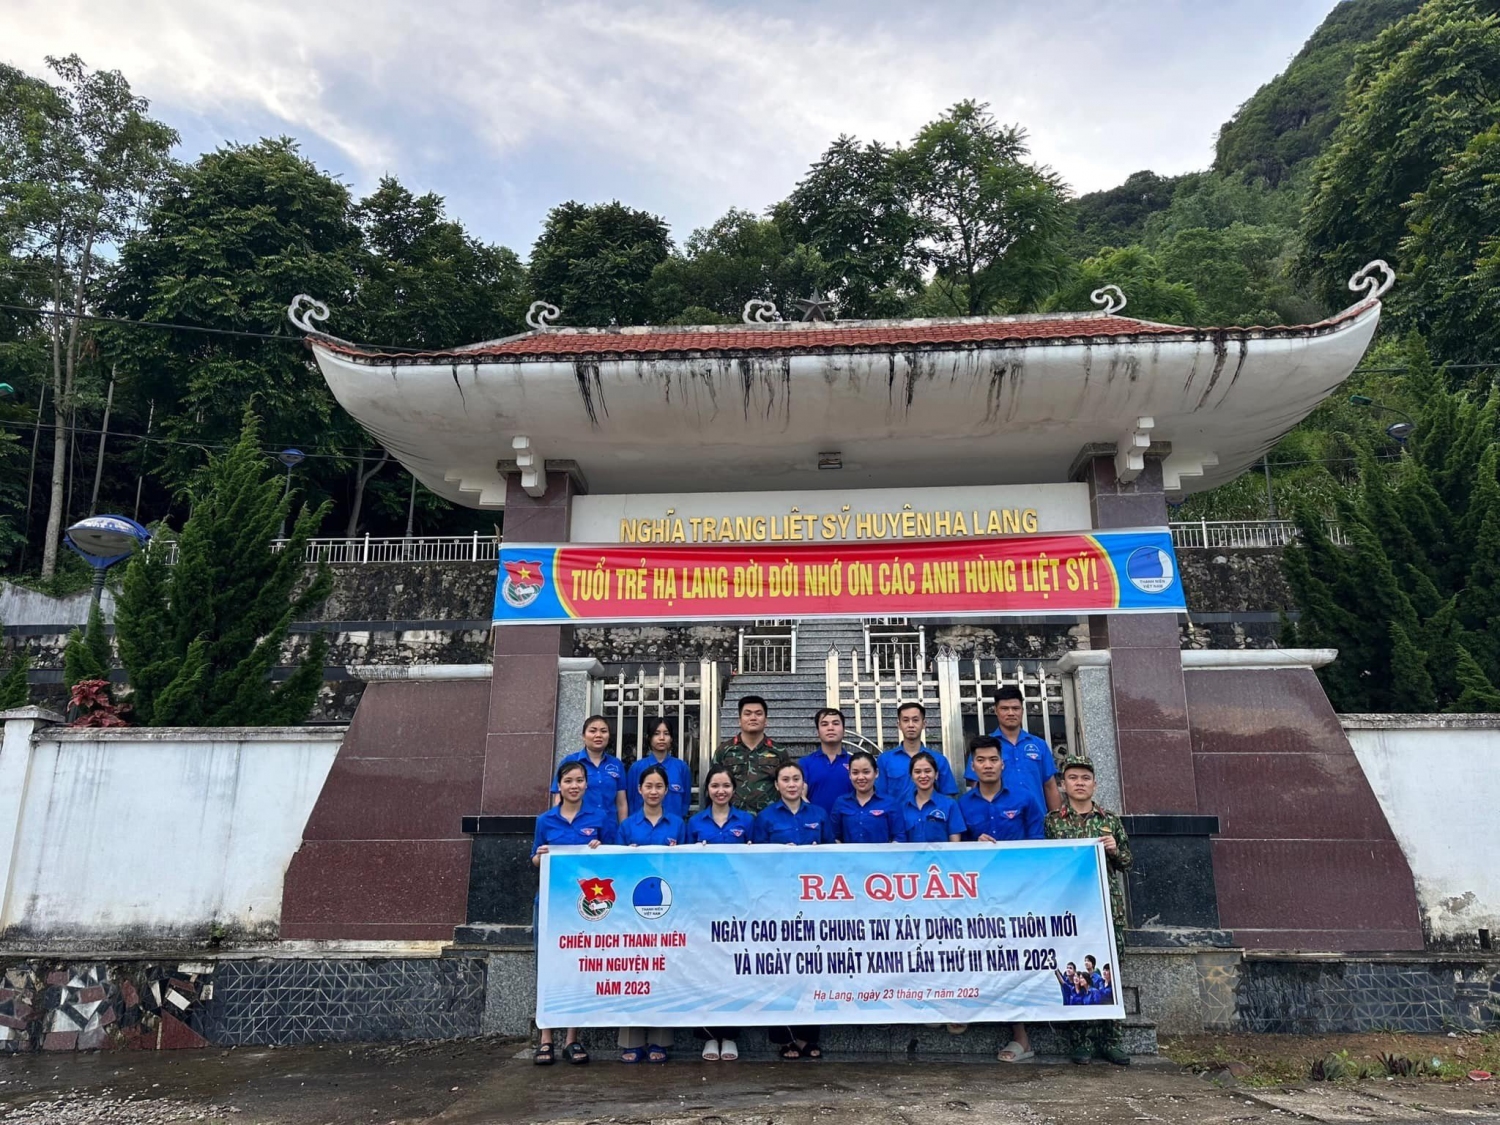 Huyện Đoàn Hạ Lang tổ chức ra quân Ngày cao điểm chung tay xây dựng nông thôn mới và Ngày Chủ nhật xanh tại nghĩa trang liệt sĩ huyện.